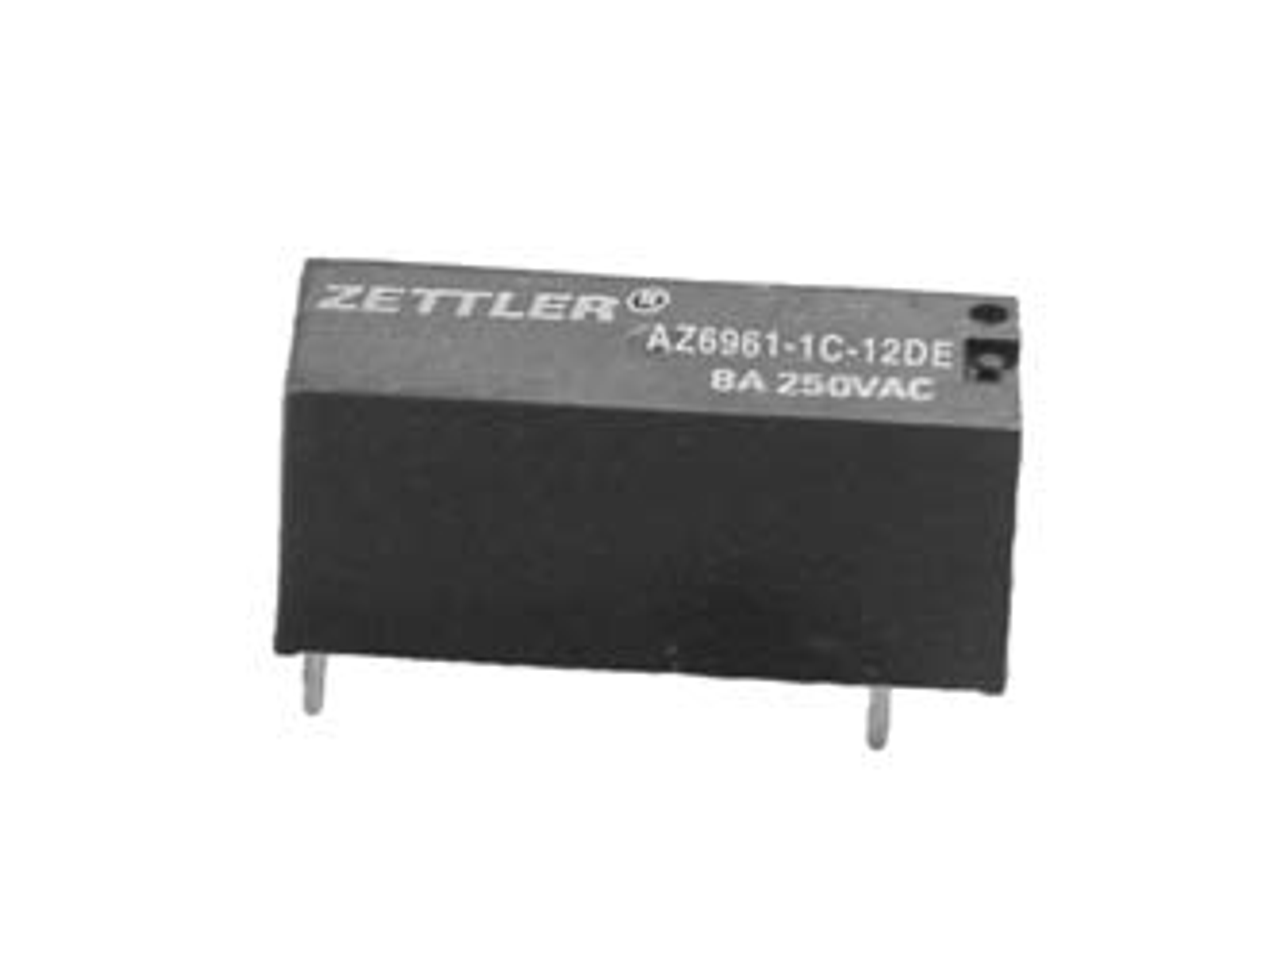 American Zettler AZ6961-1C-12DE Power Relay